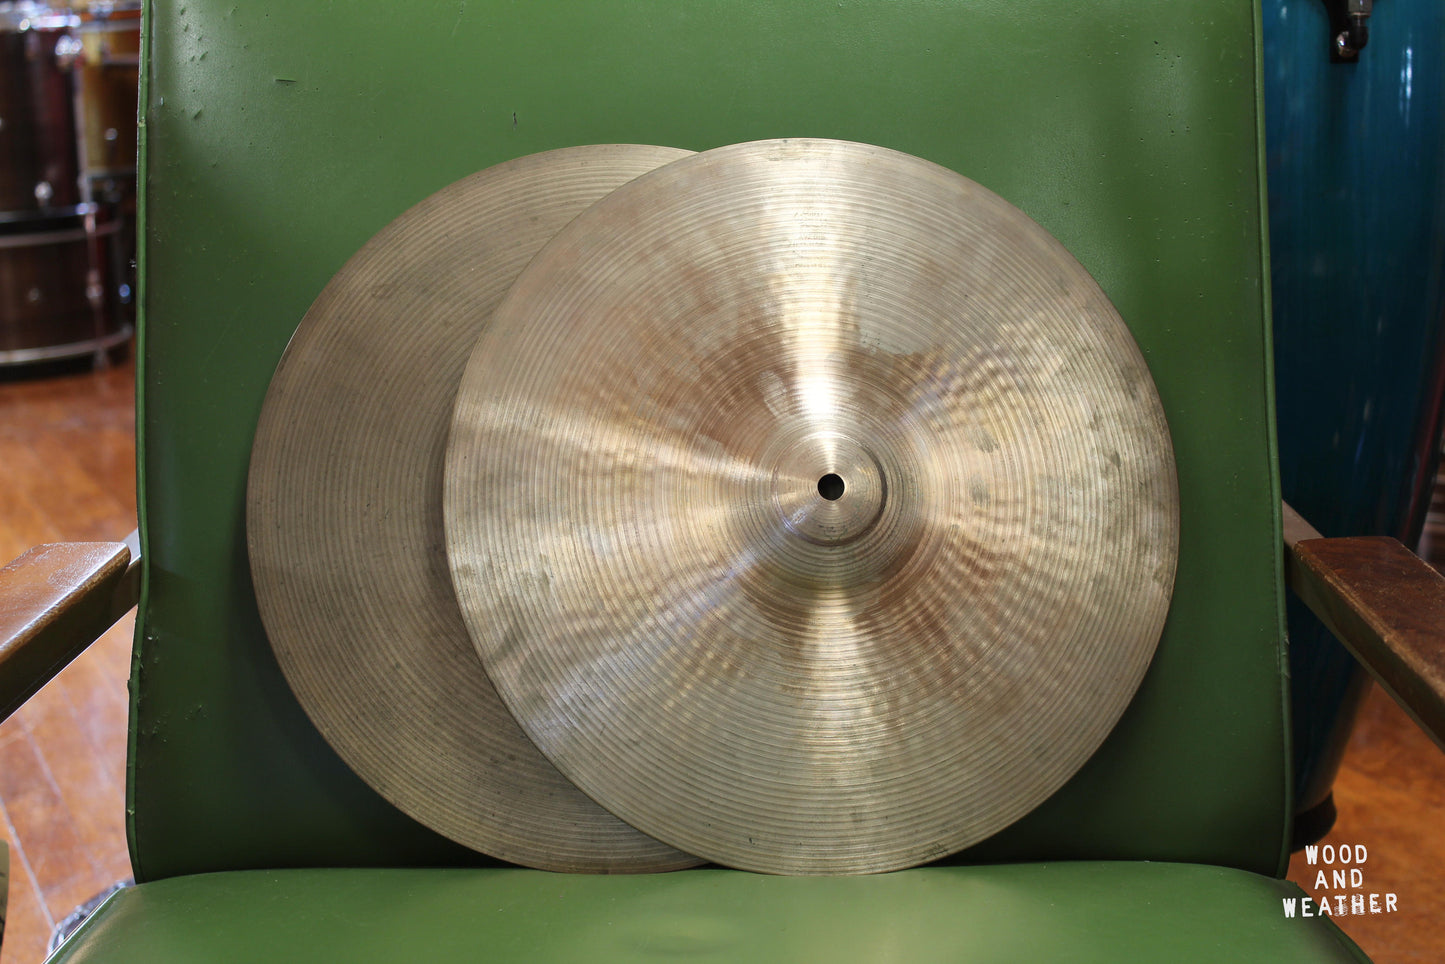 1970s A. Zildjian 14" New Beat Hi-Hat Cymbals 845/1395g